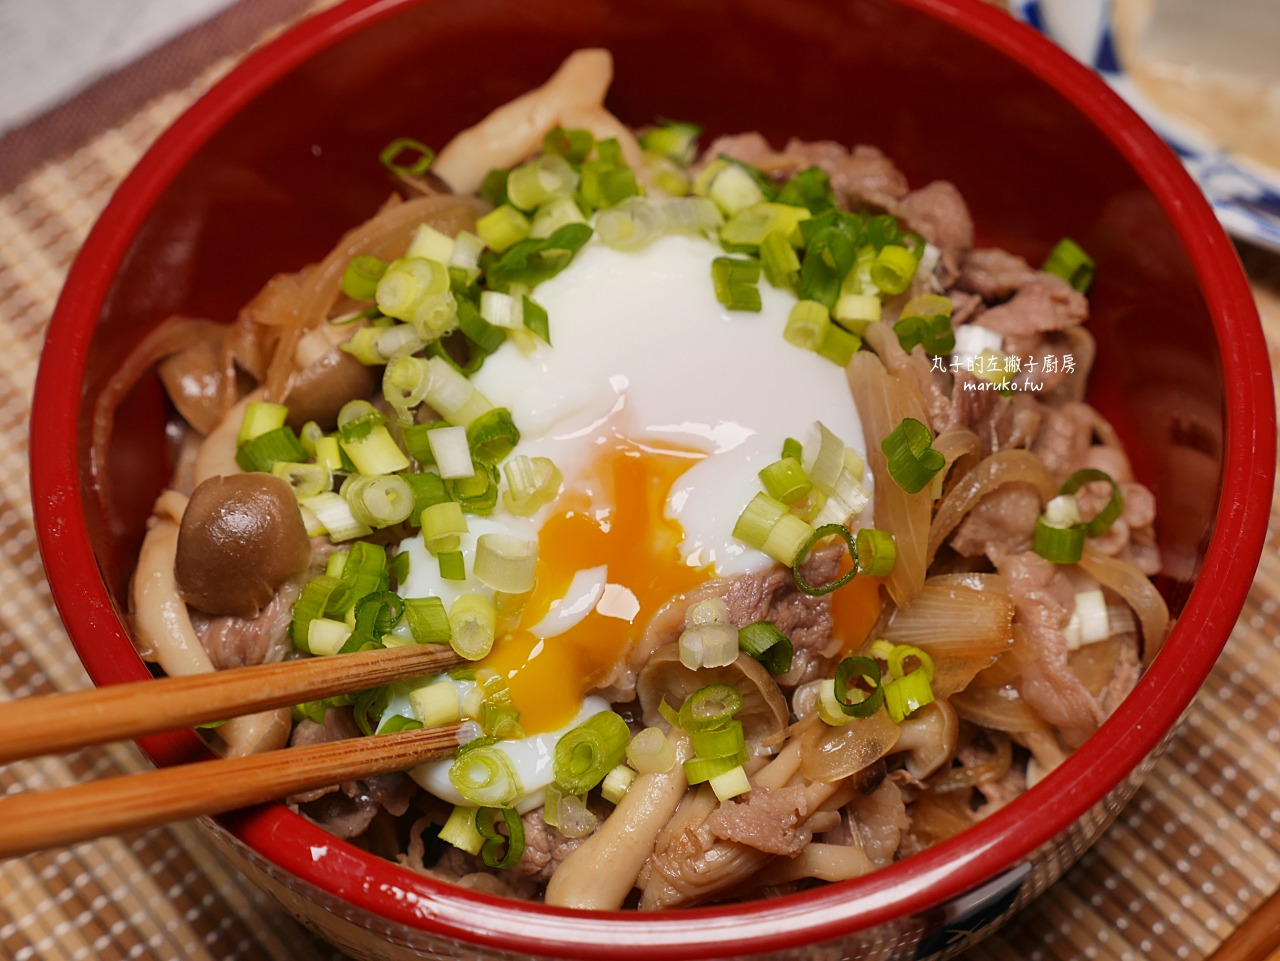 食譜 牛丼簡單醬汁做日式牛肉蓋飯10分鐘上菜快速晚餐做法 Maruko與美食有個約會